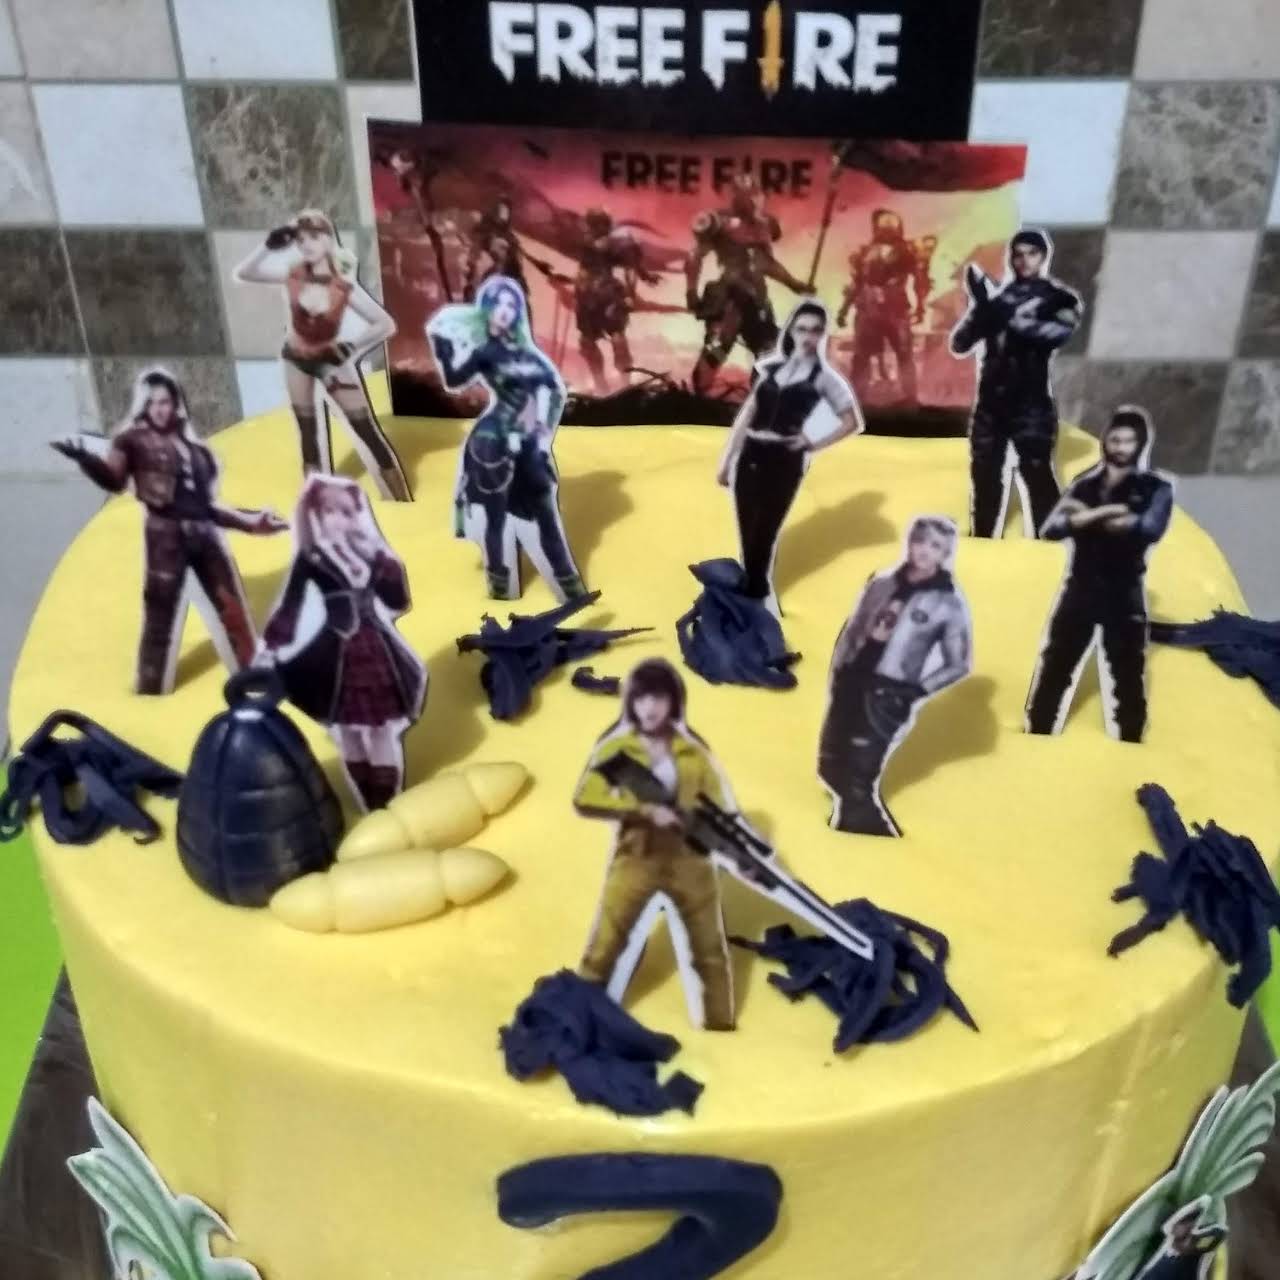 Cakes_n_freedom